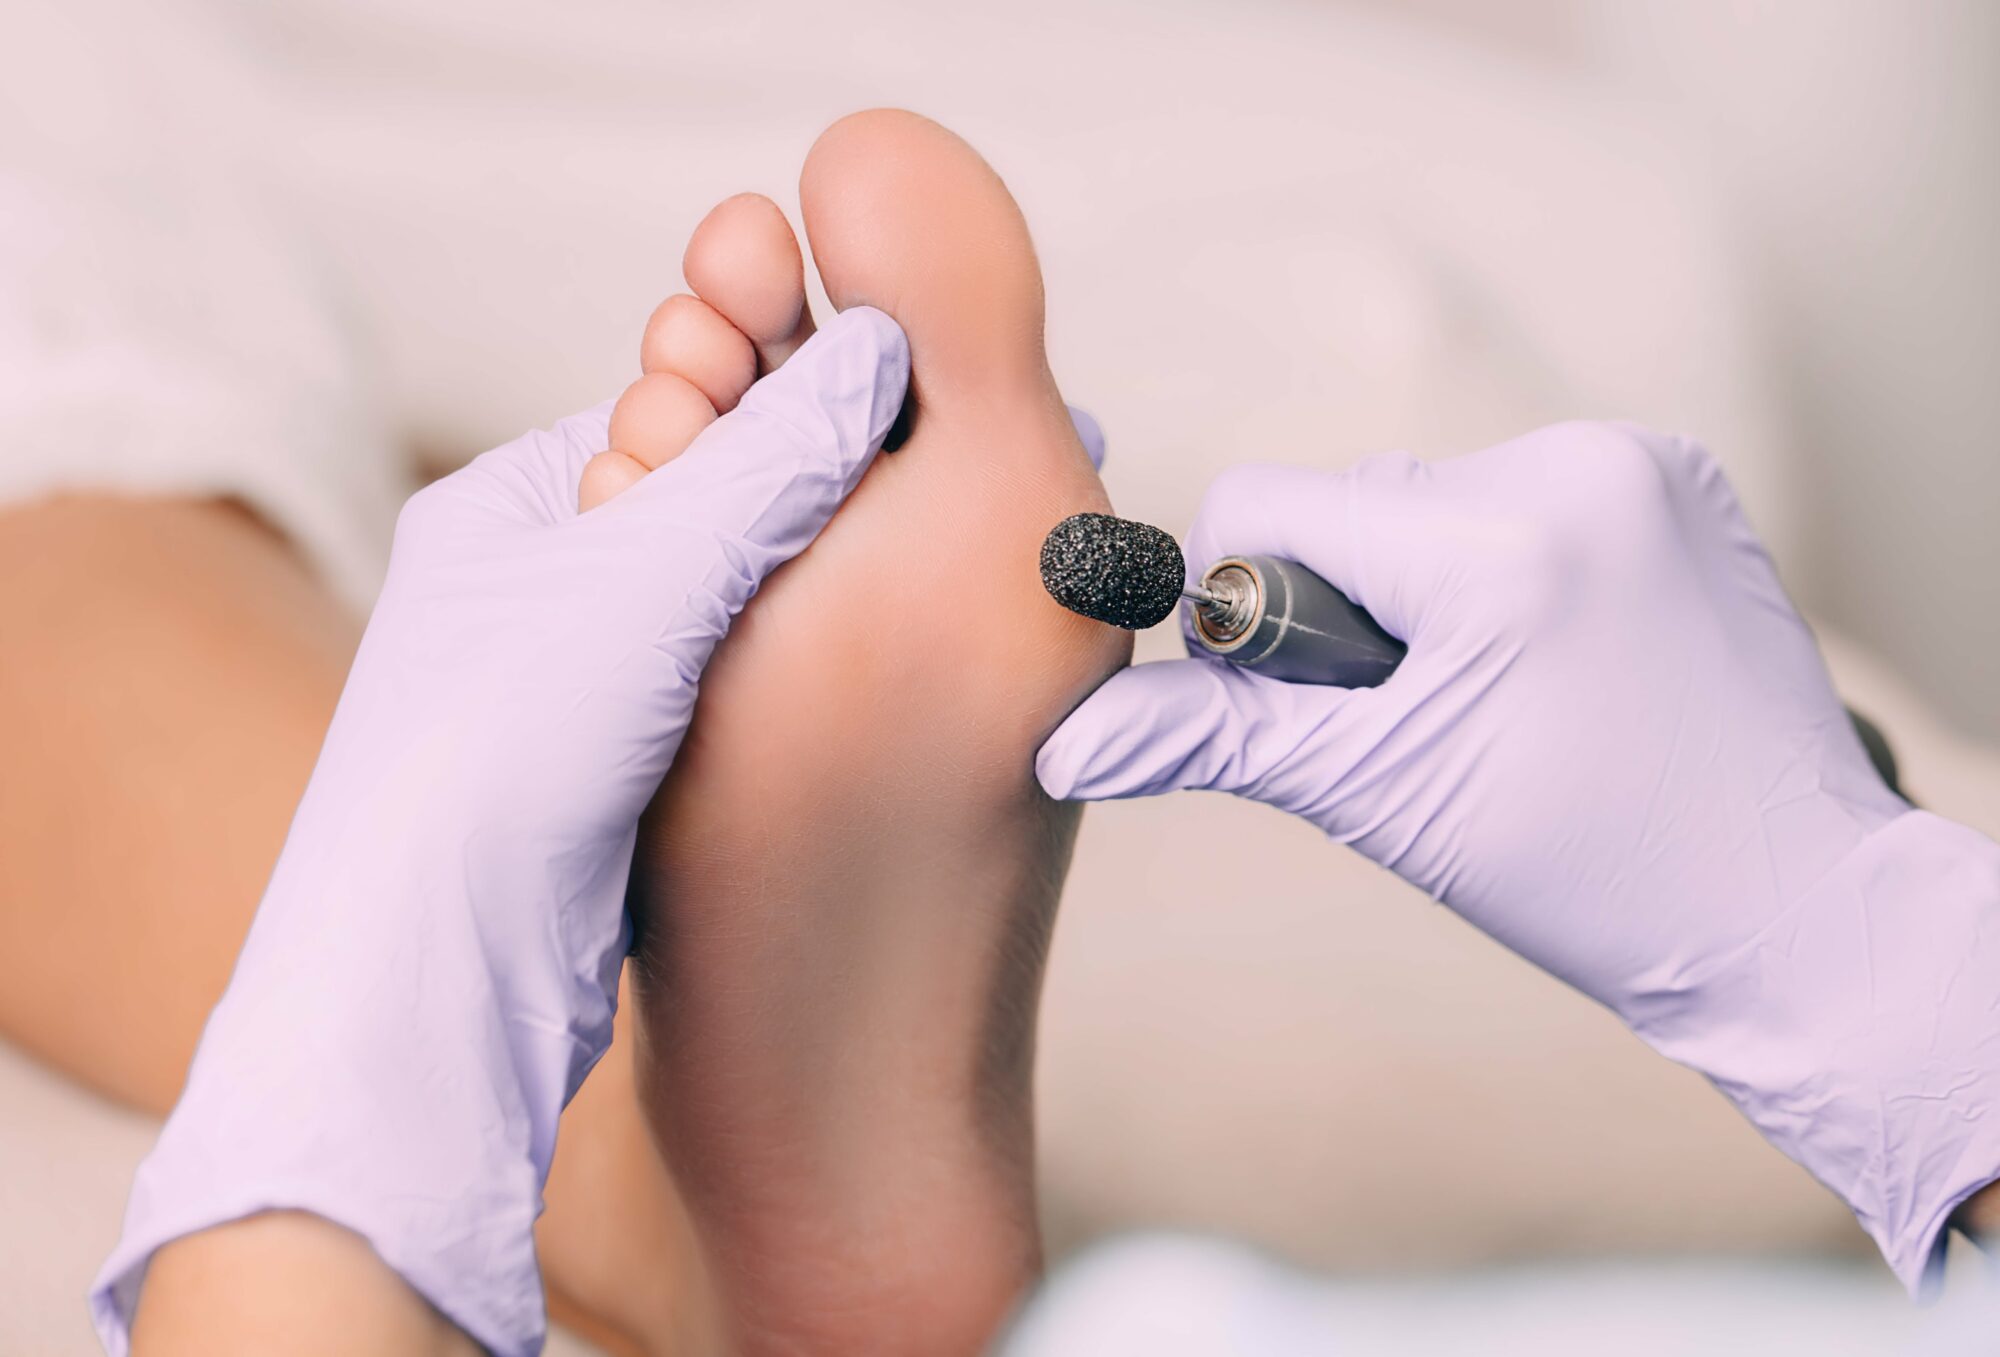 Fußpfleger, der die Füße poliert und die Haut mit einem speziellen Werkzeug entfernt.